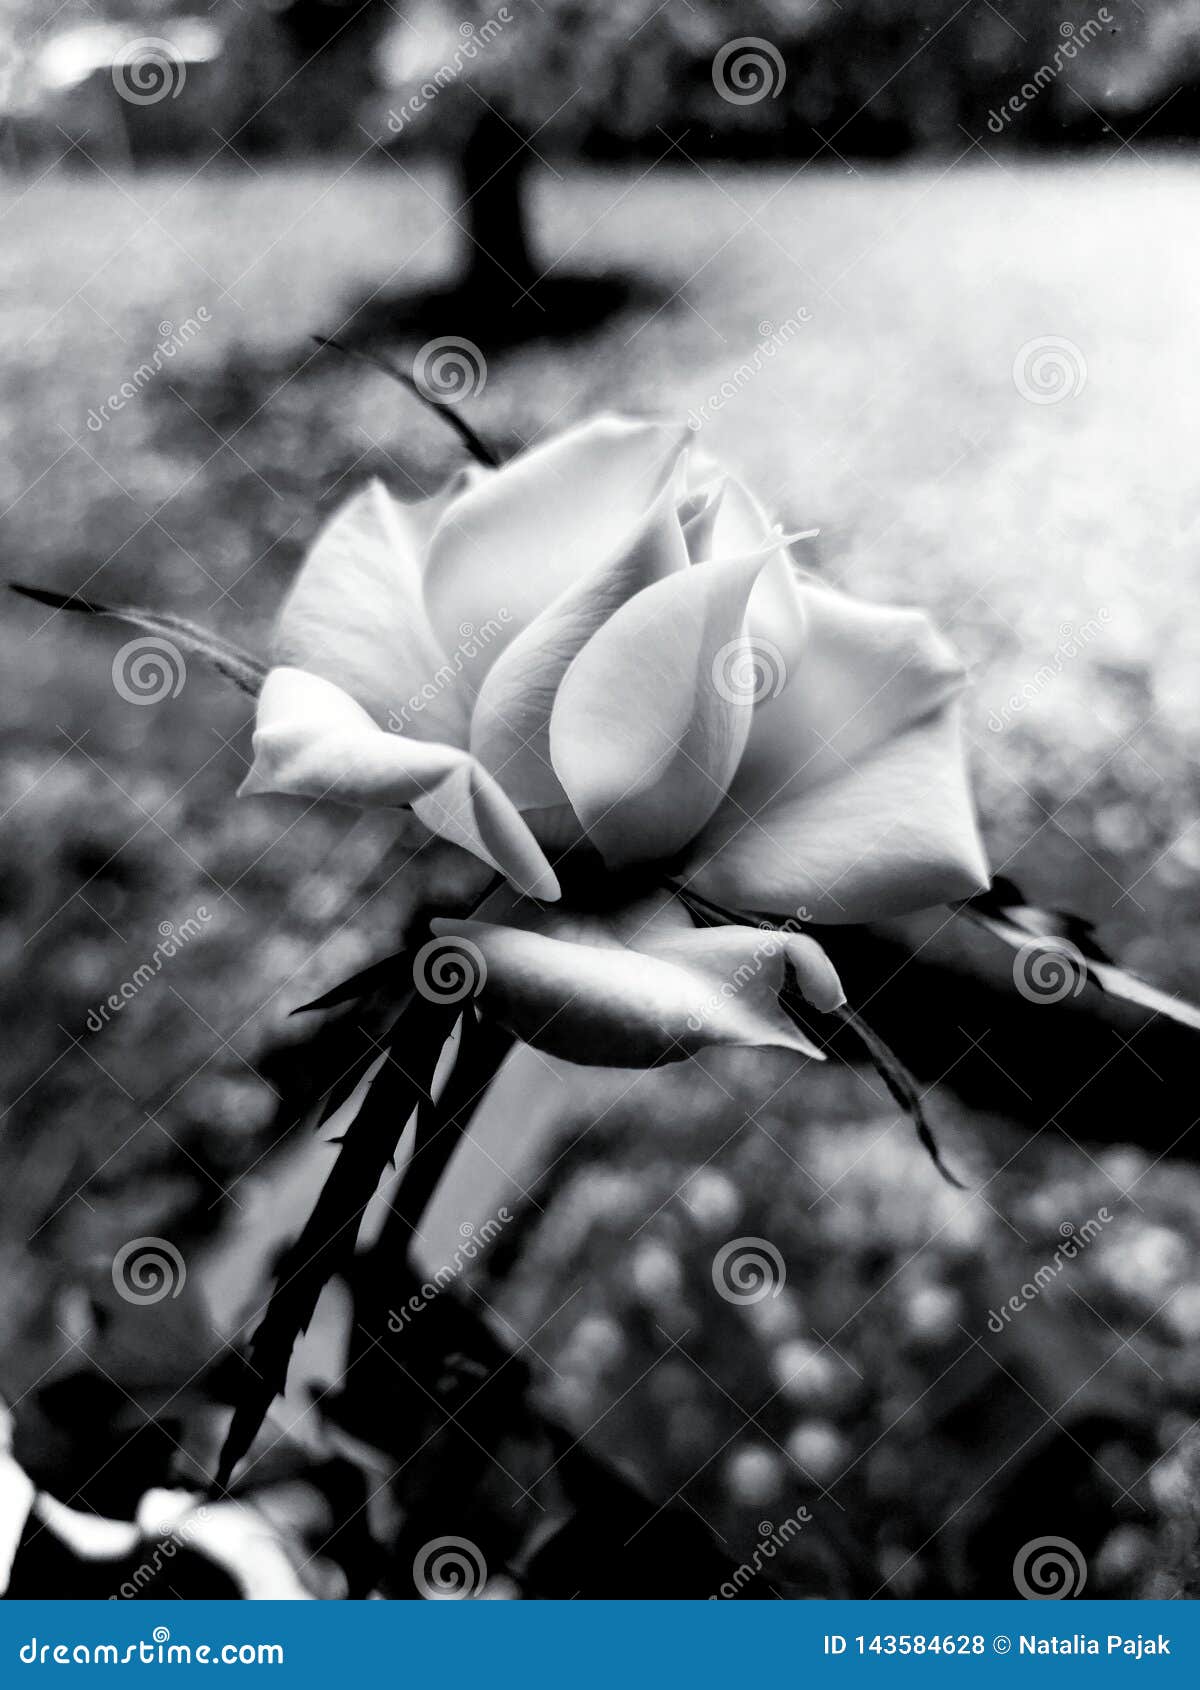 Rosa In Bianco E Nero Fotografia Stock Immagine Di Rose